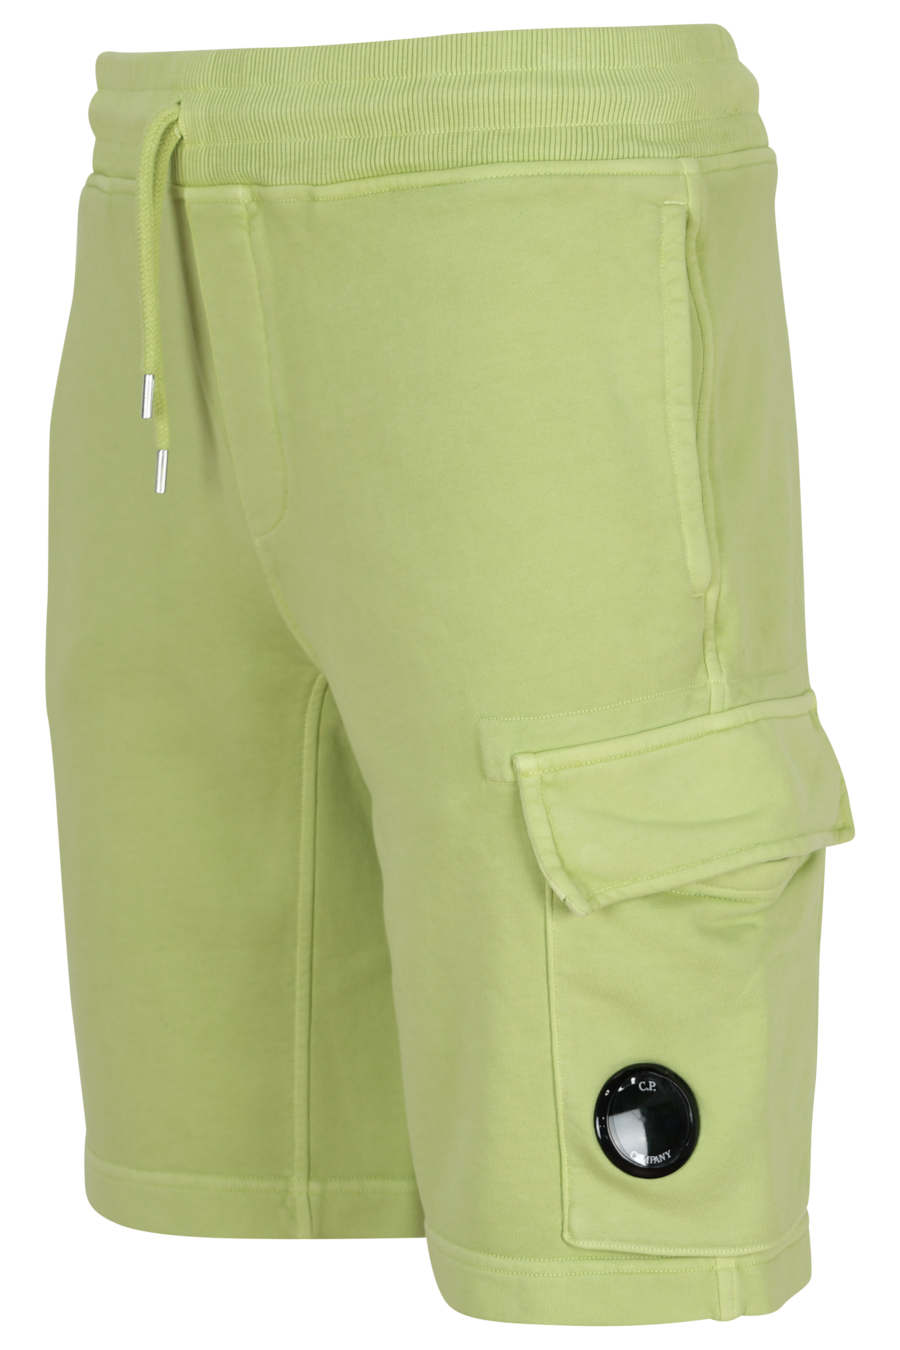 Pantalón de chándal midi verde claro estilo cargo con minilogo lente - 7620943731422 1